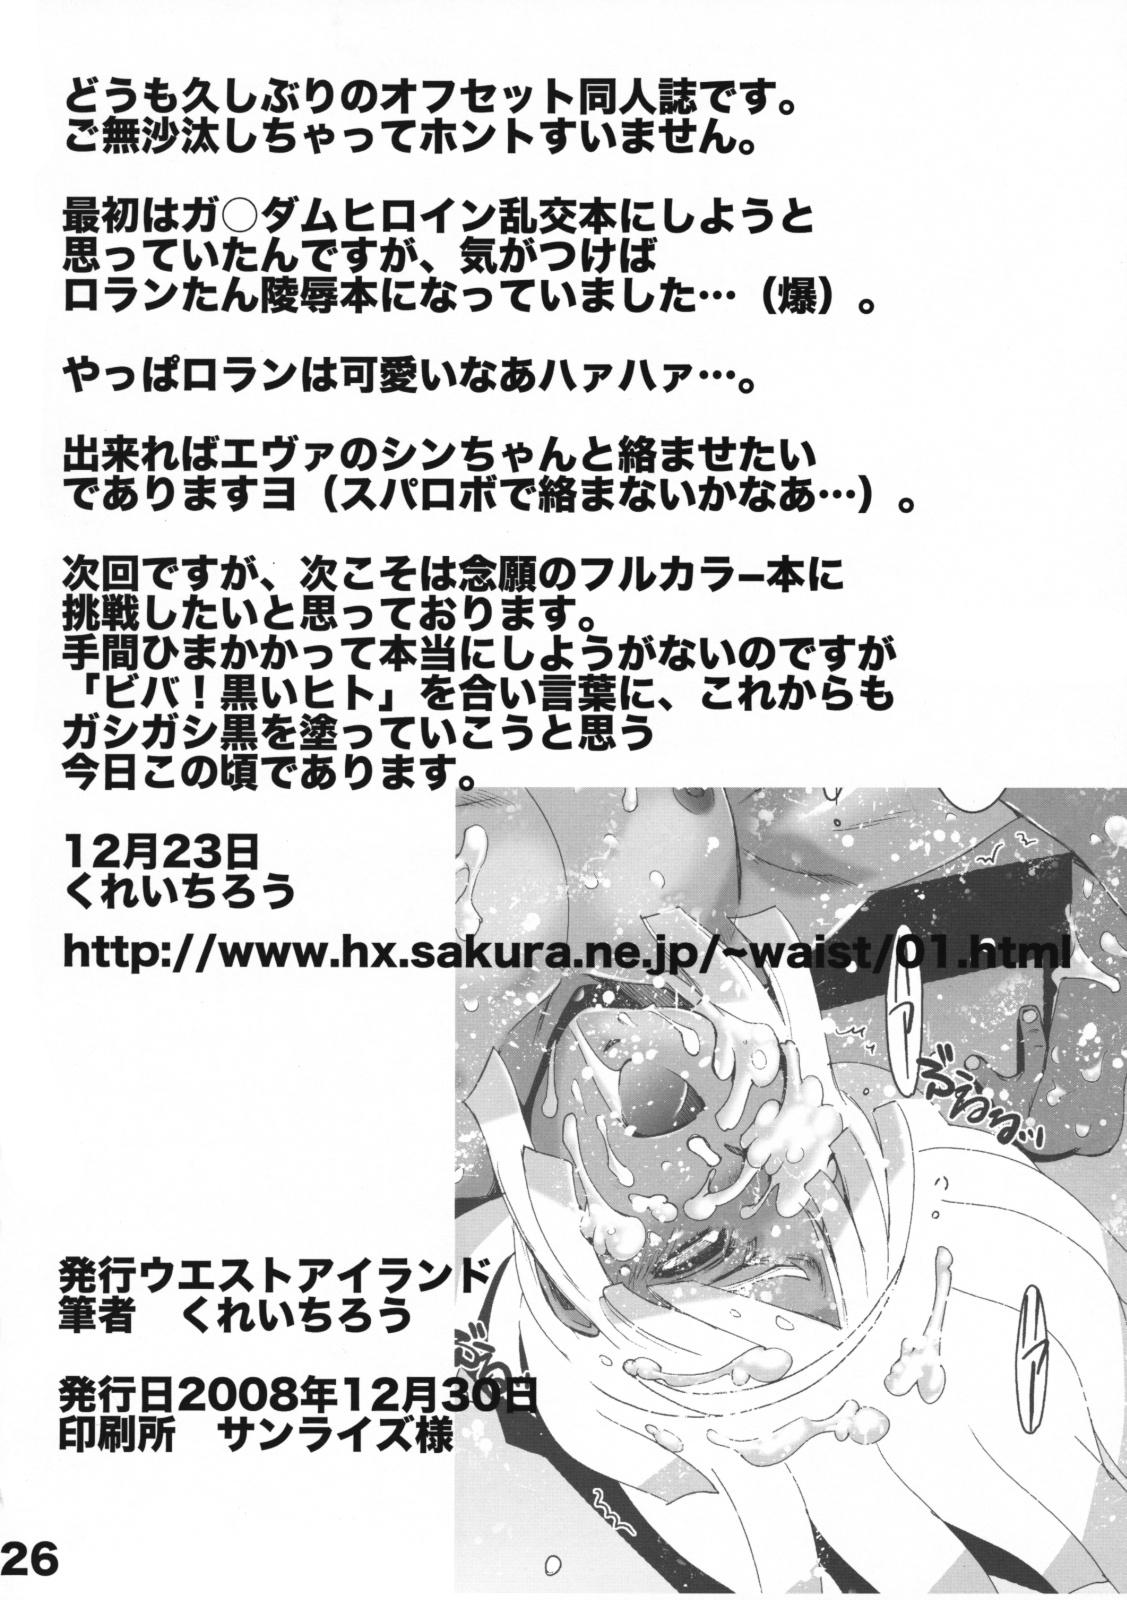 Raw WIB Vol.8 - Gundam Turn a gundam Victory gundam Great Fuck - Page 26